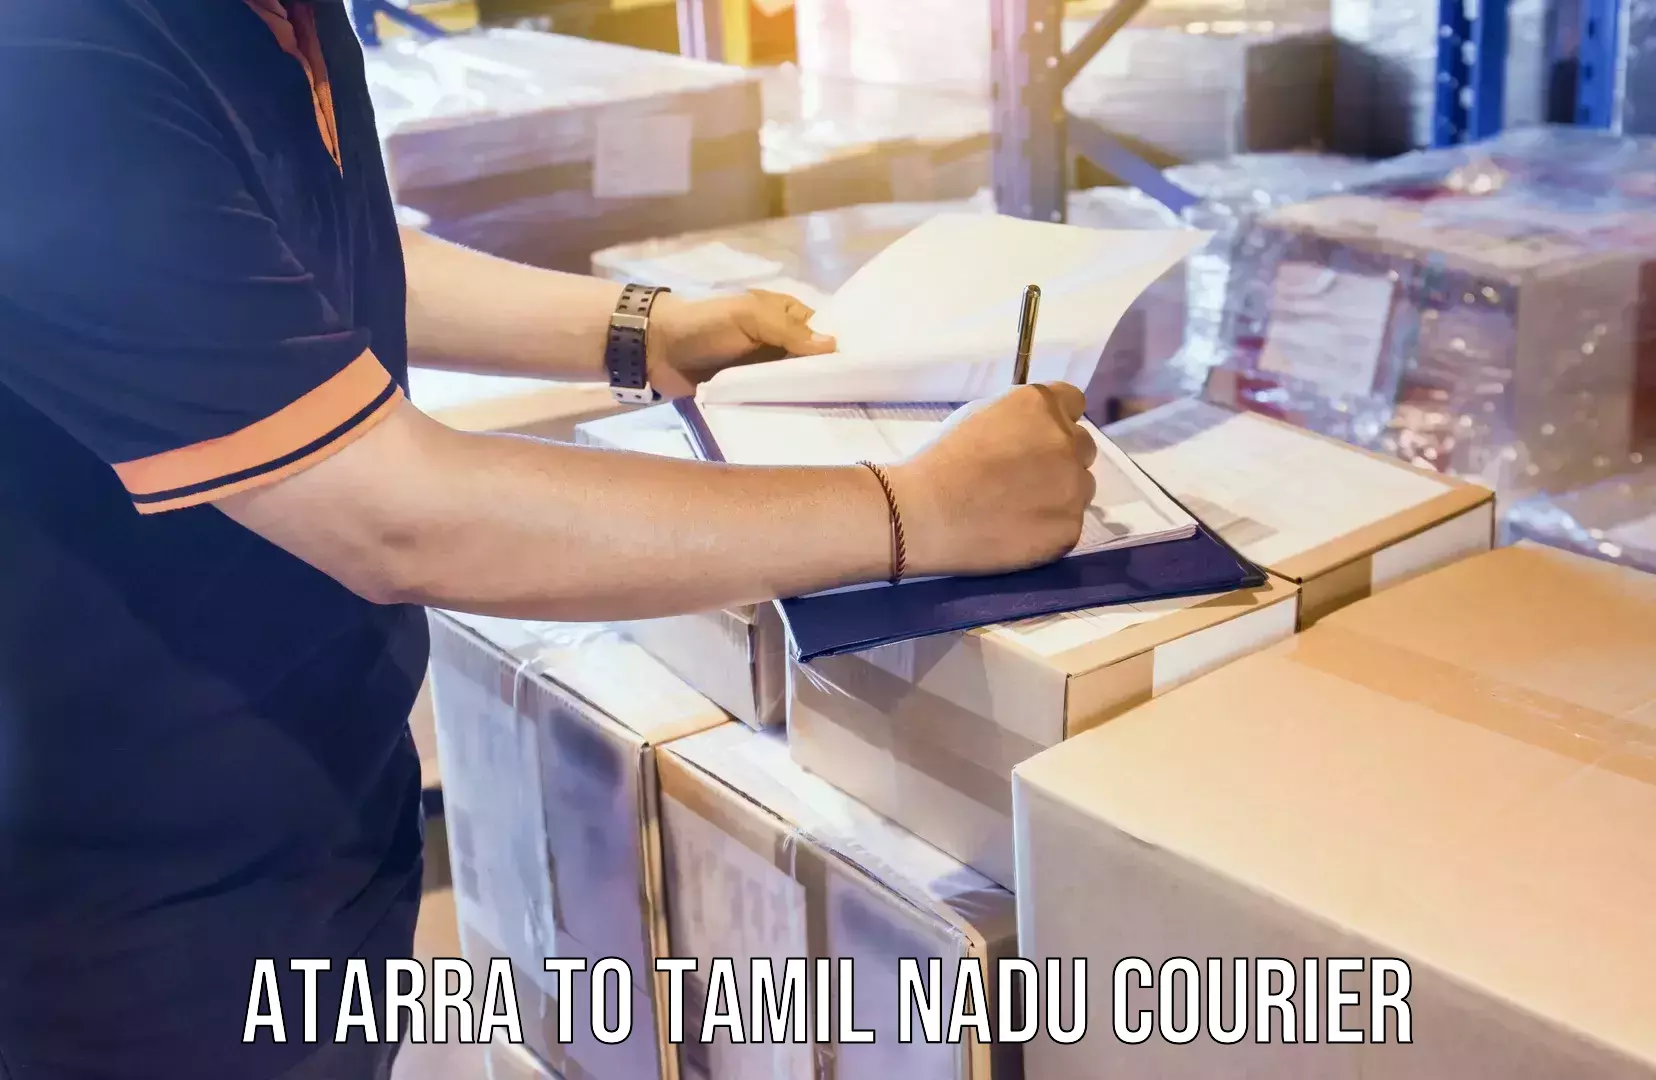 Custom courier packaging in Atarra to Tamil Nadu